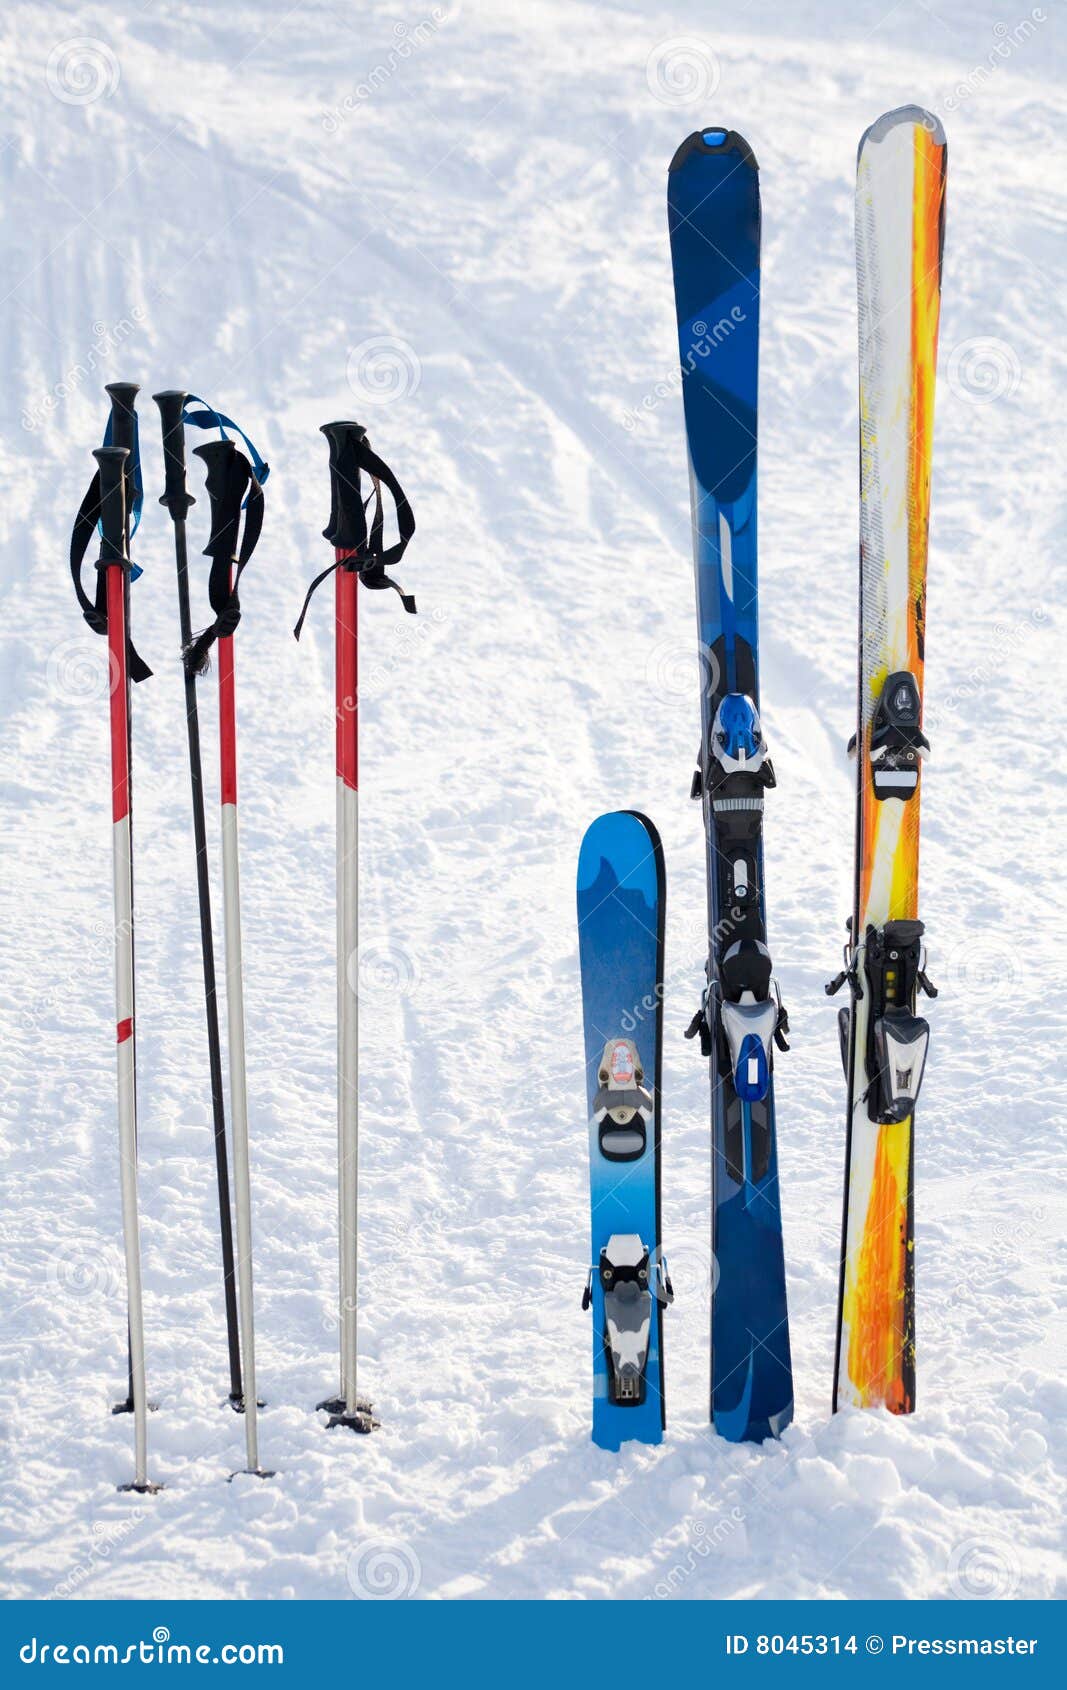 Skiing equipment stock photo Image of blue resort 